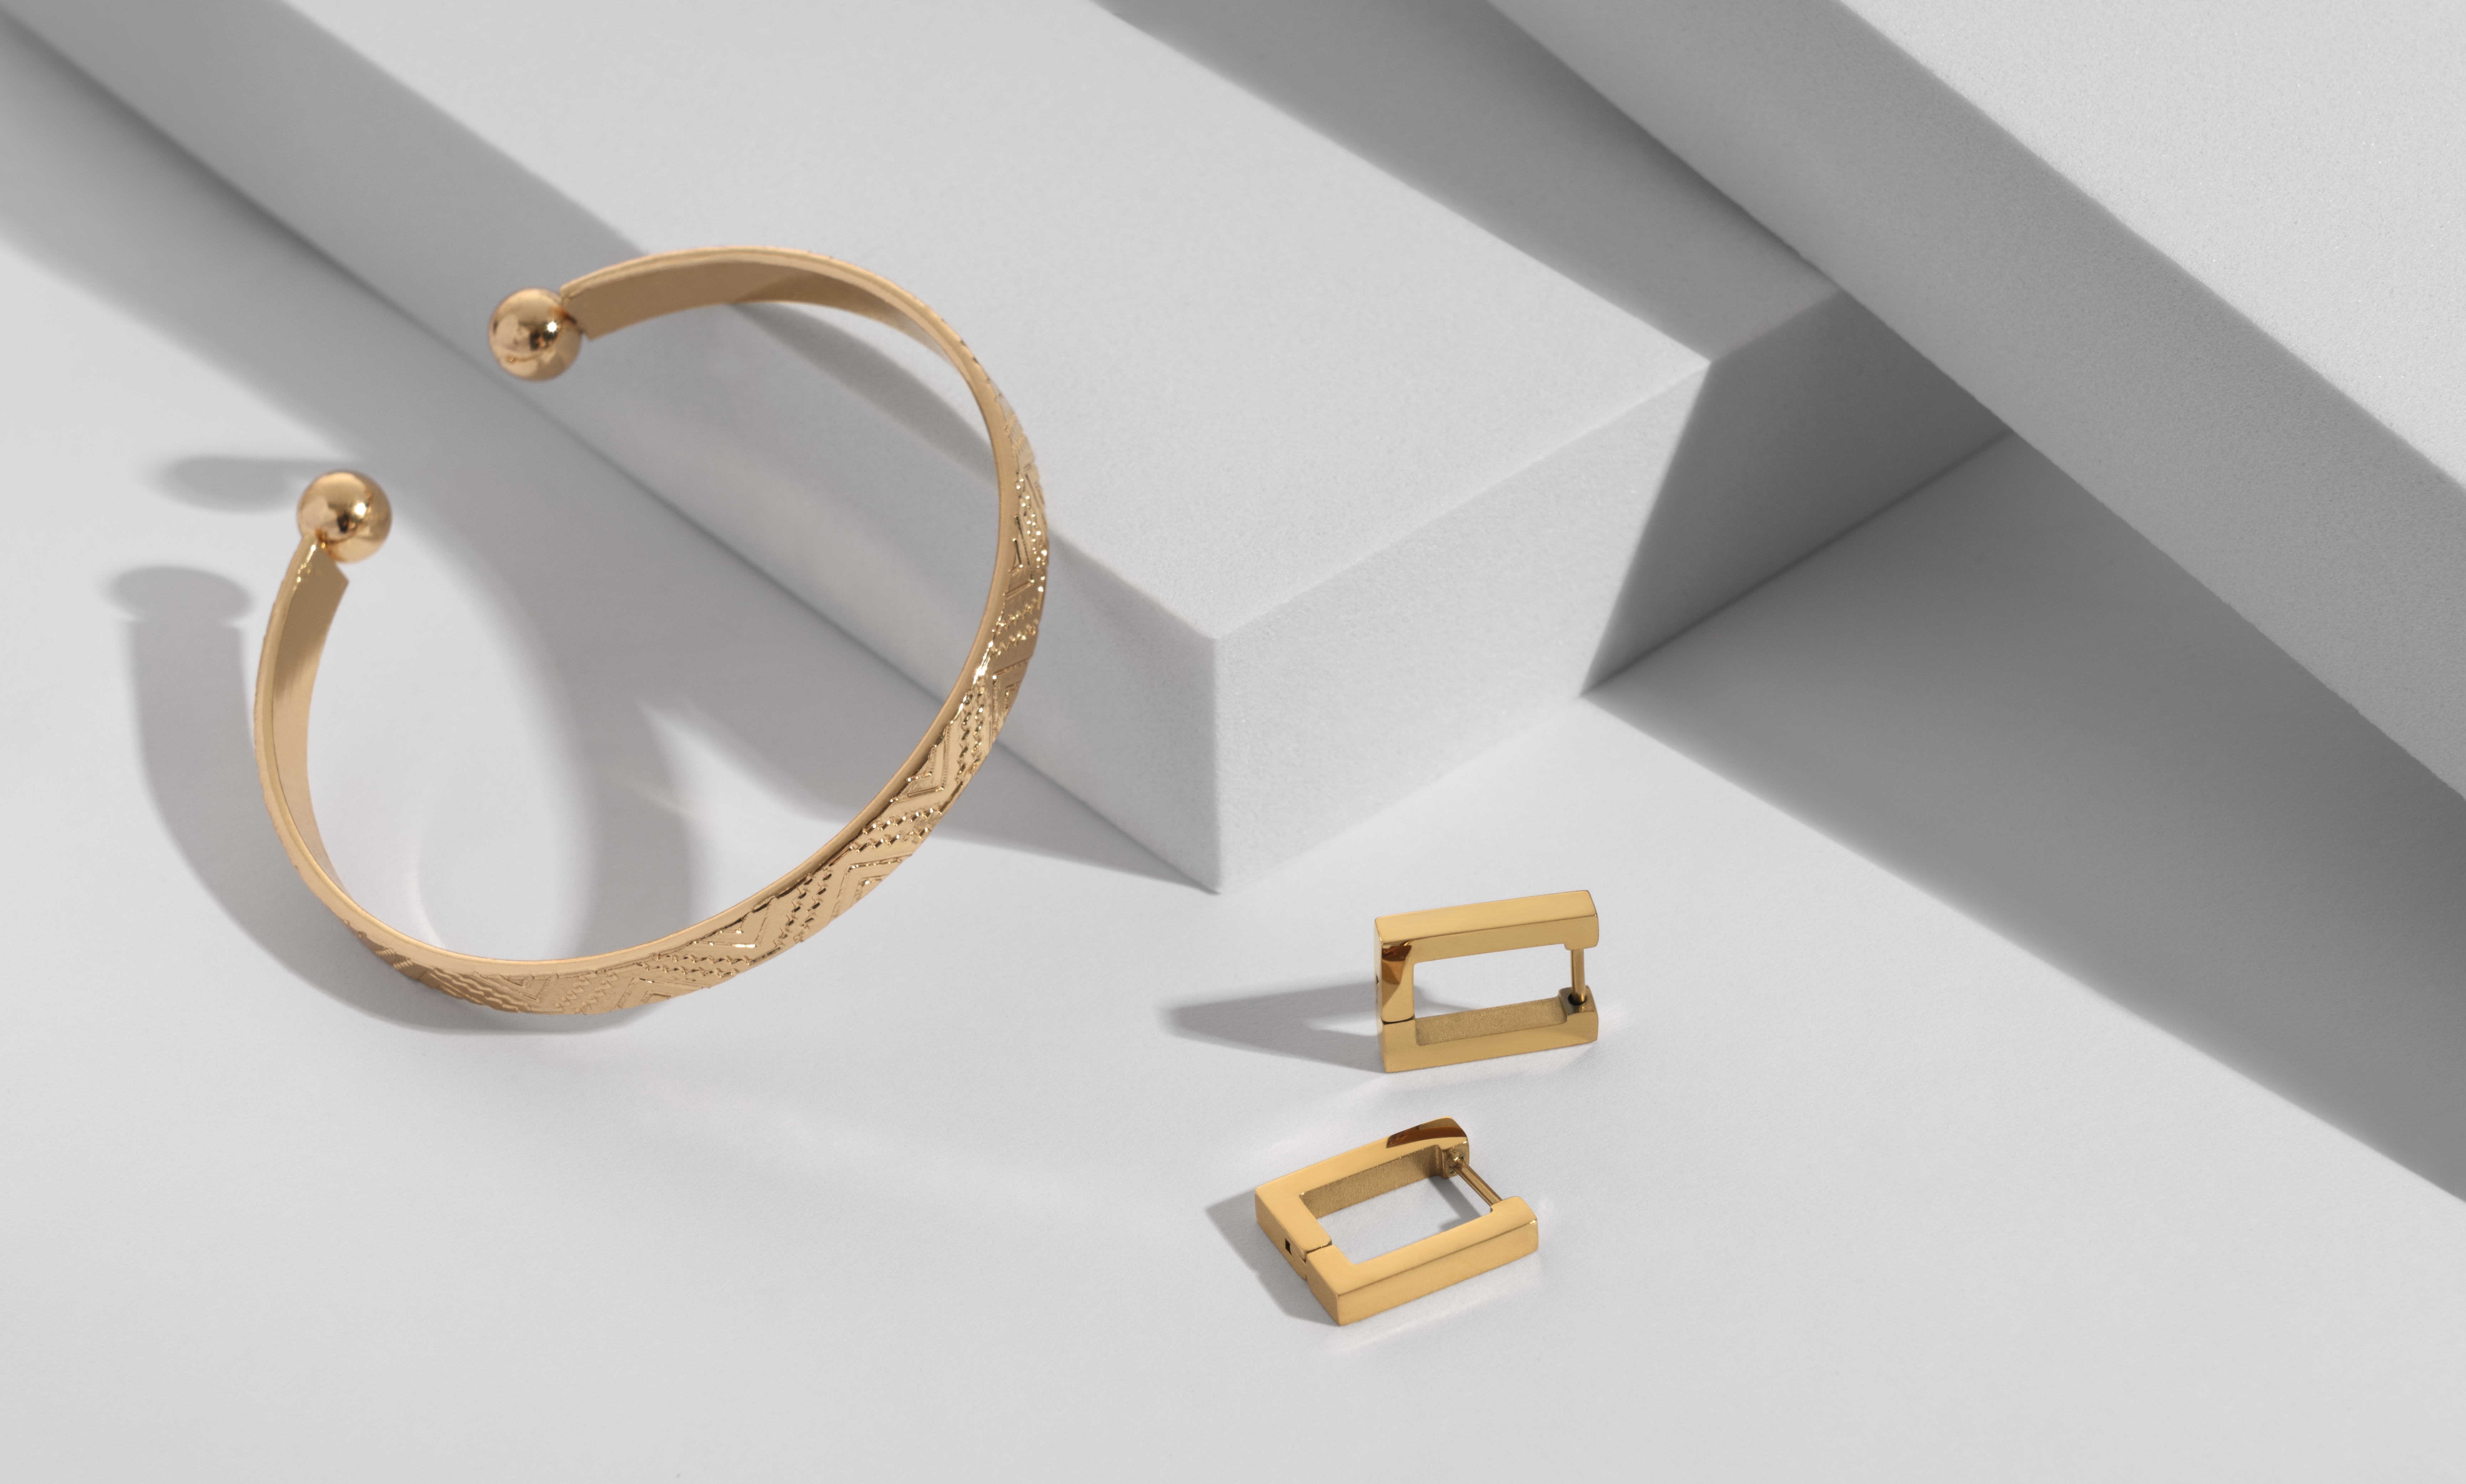 Une paire de boucles d'oreilles en or et un bracelet | Source : Shutterstock